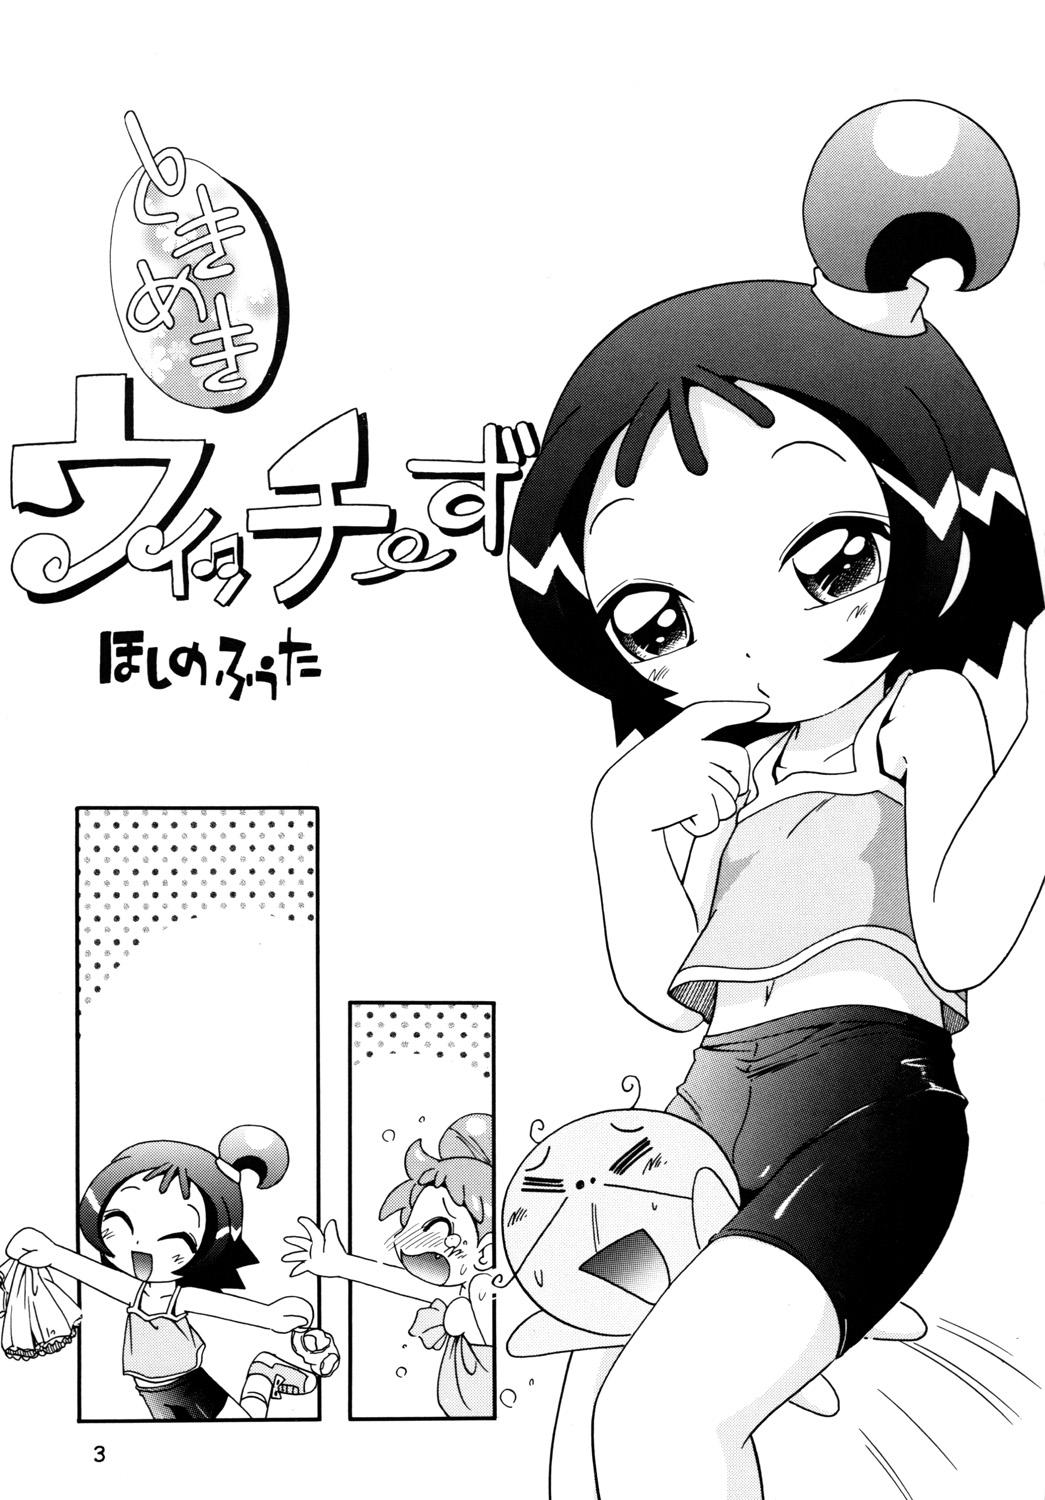 Oral Sex Tokimeki Withches - Ojamajo doremi Balls - Page 2